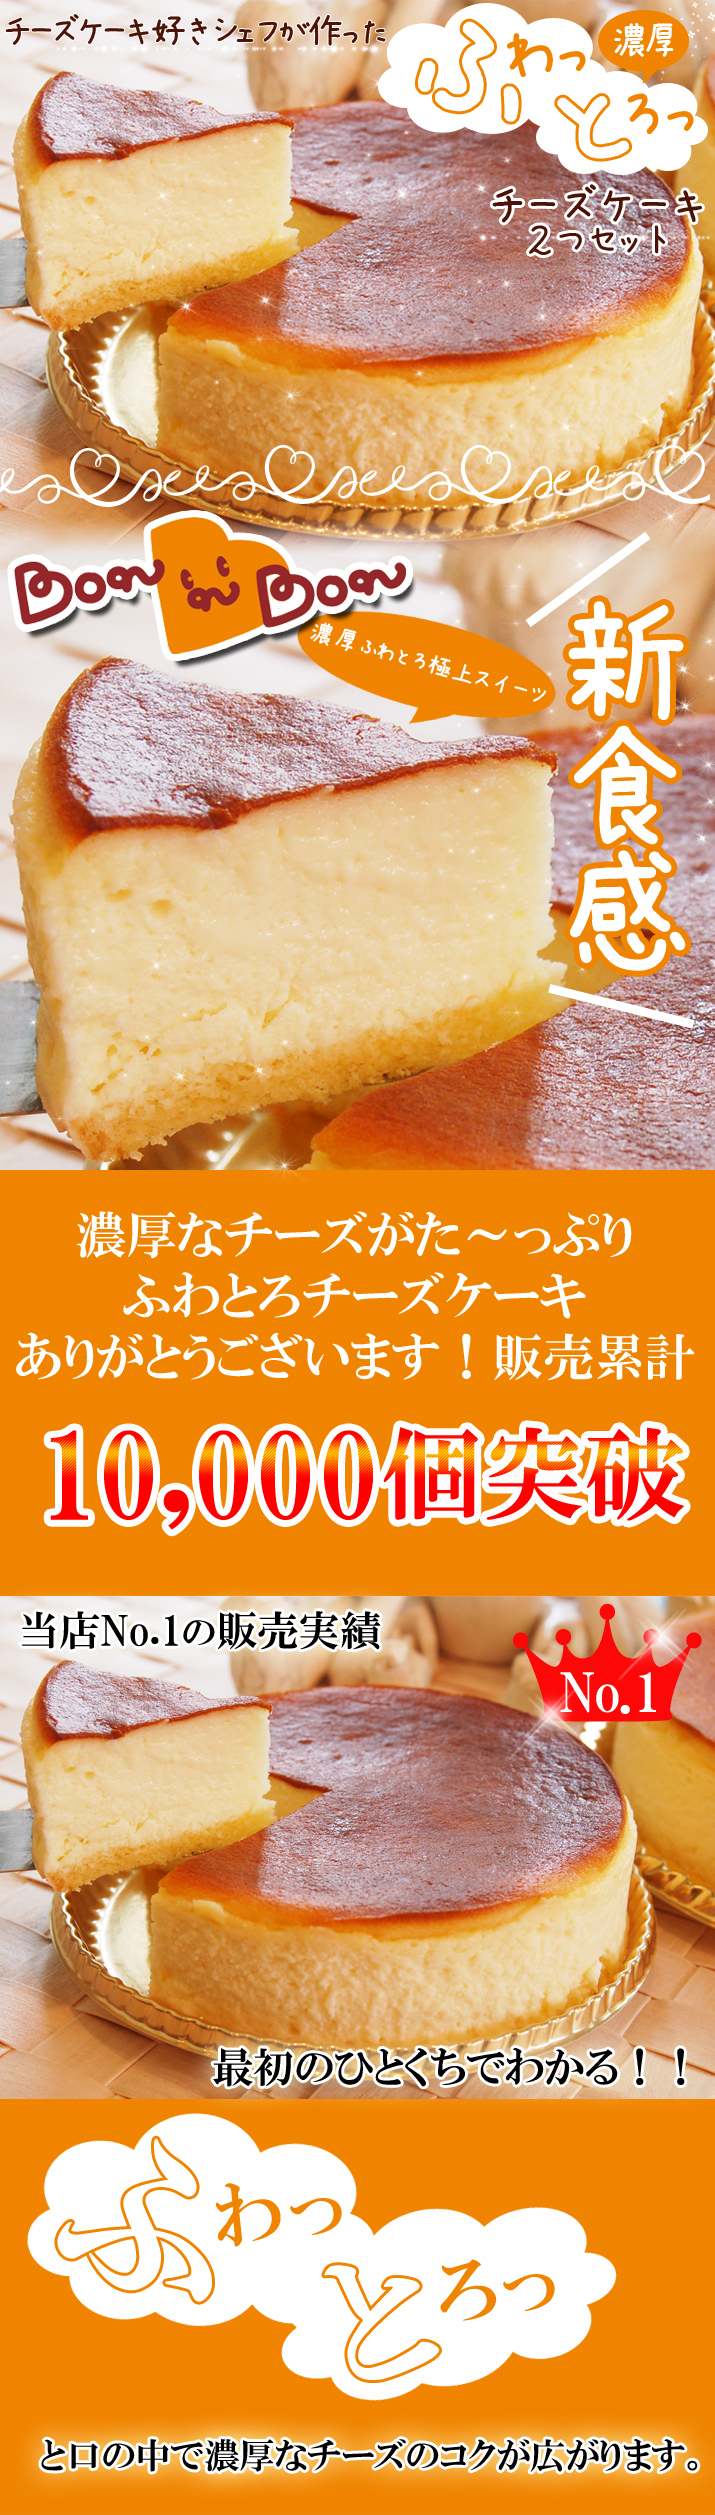 送料込み】ふわとろチーズケーキ(4号12cm)x2個セット【期間限定商品 